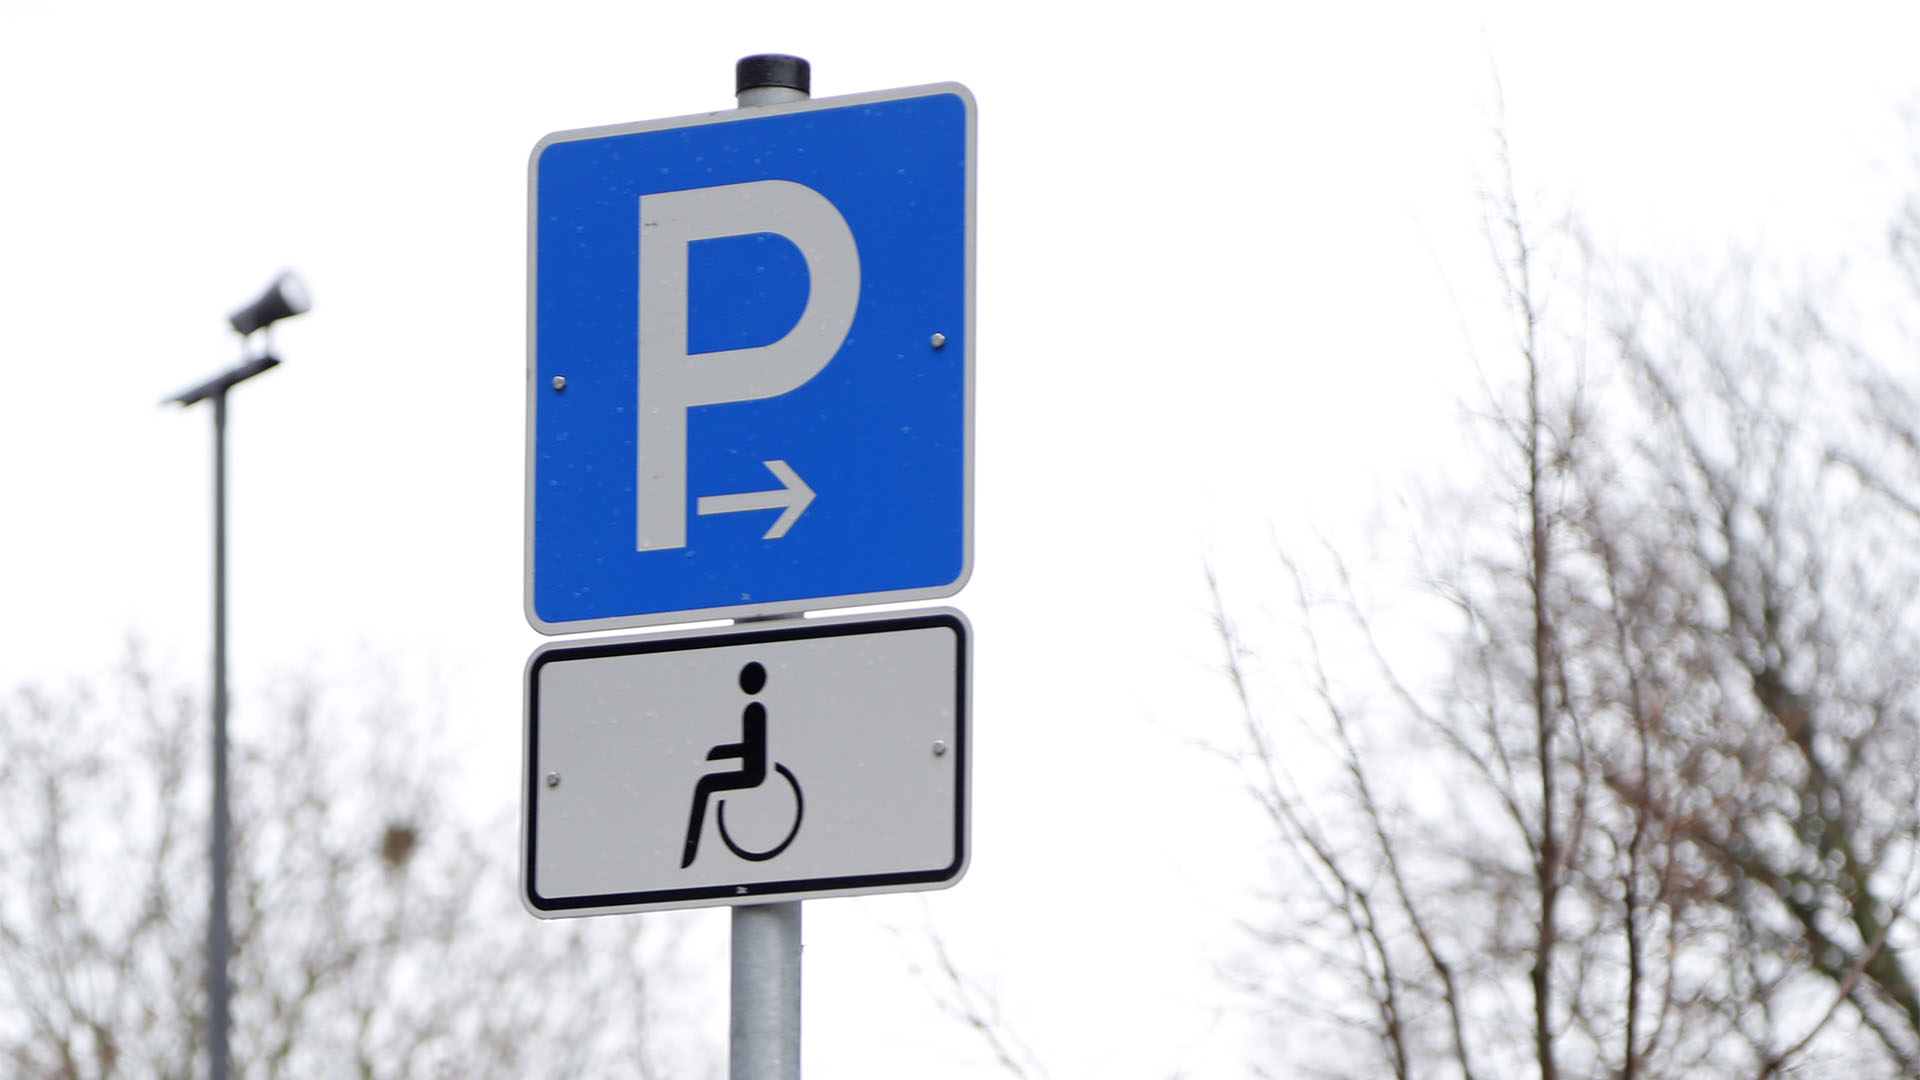 Verkehsschild: ein blaues Schild mit weißem P, darunter ein weiteres Schild mit dem Rollstuhl-Symbol.